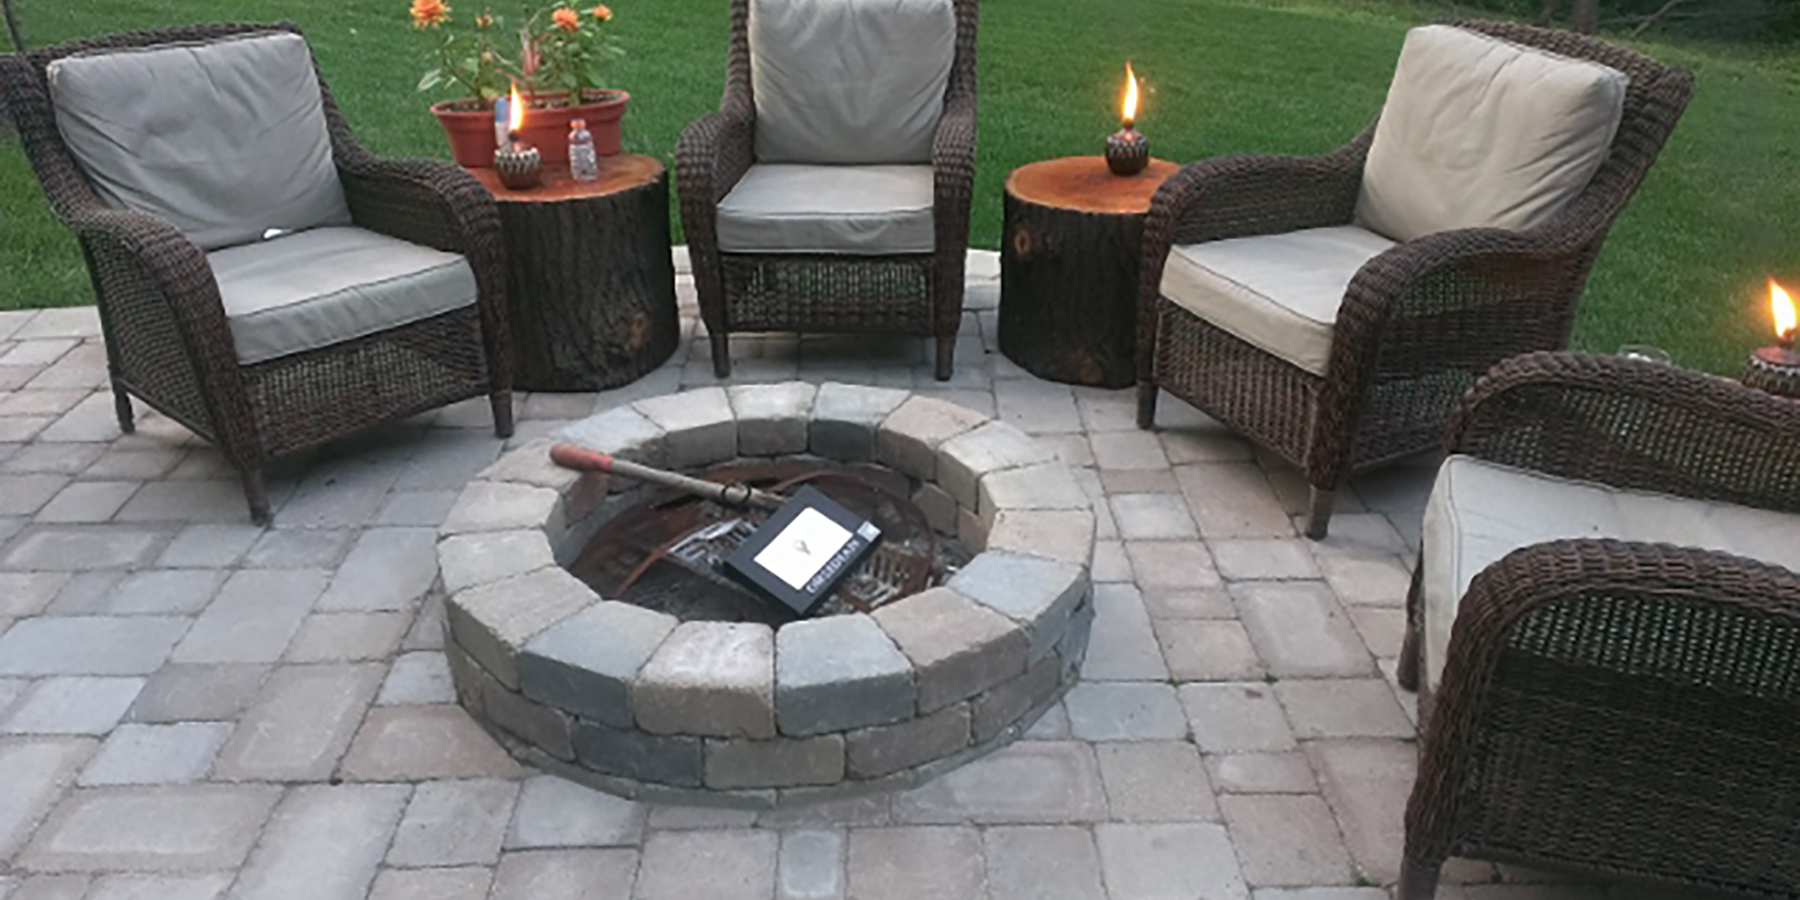 Brick paver fireplace and patio